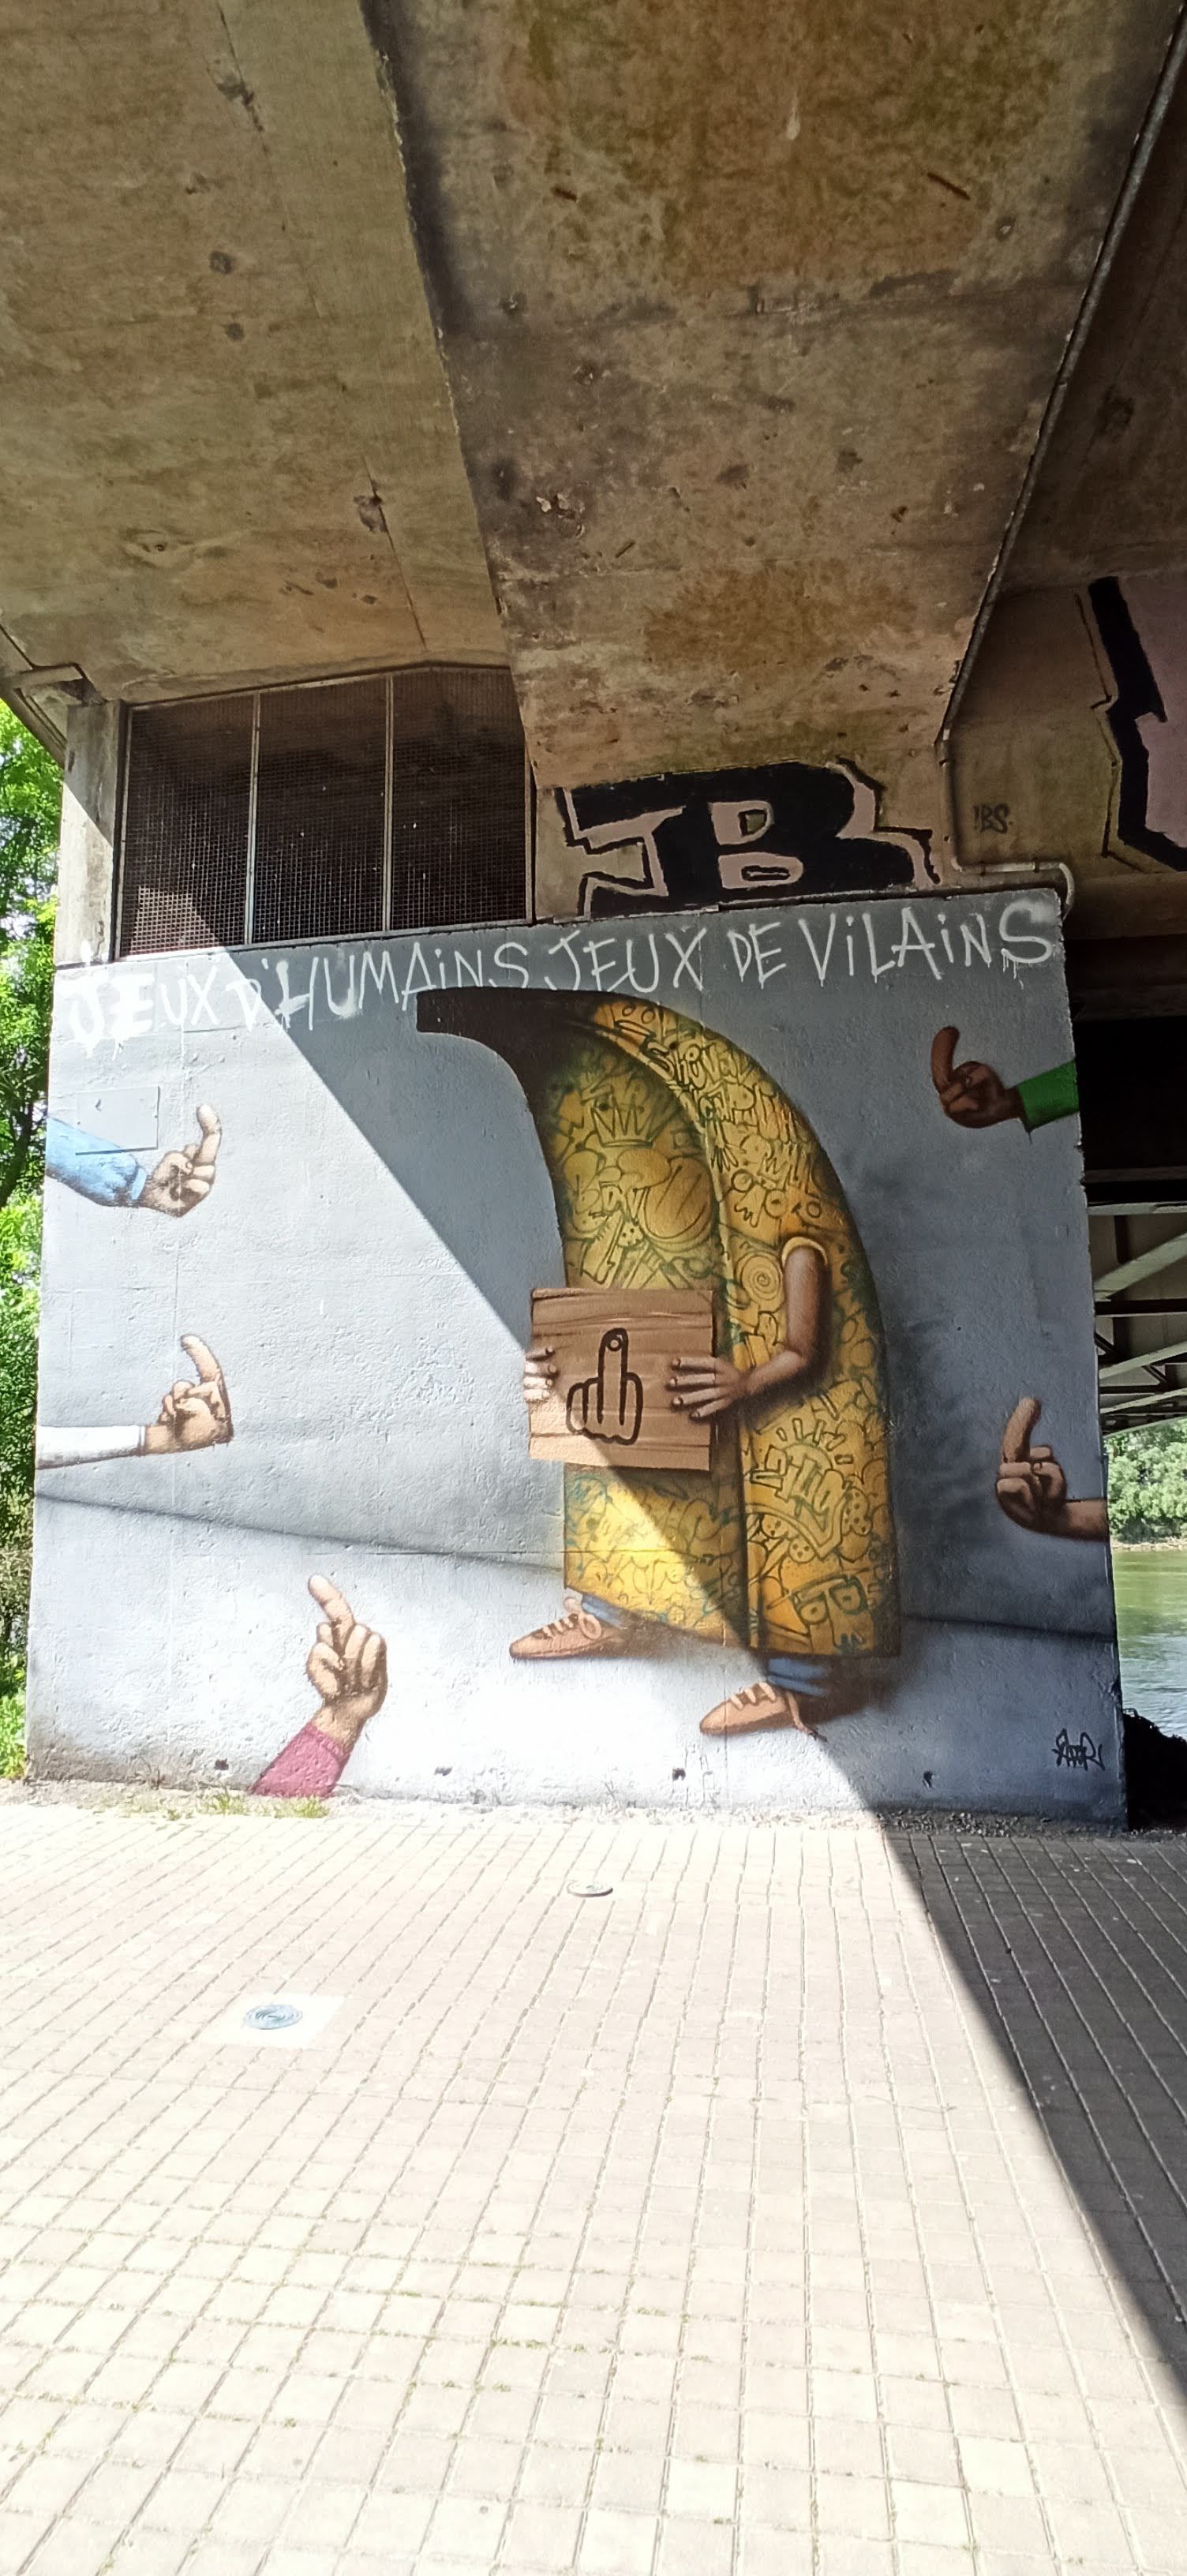 Graffiti 5055 Jeux d'humains jeux de vilains de Ador capturé par Rabot à Nantes France